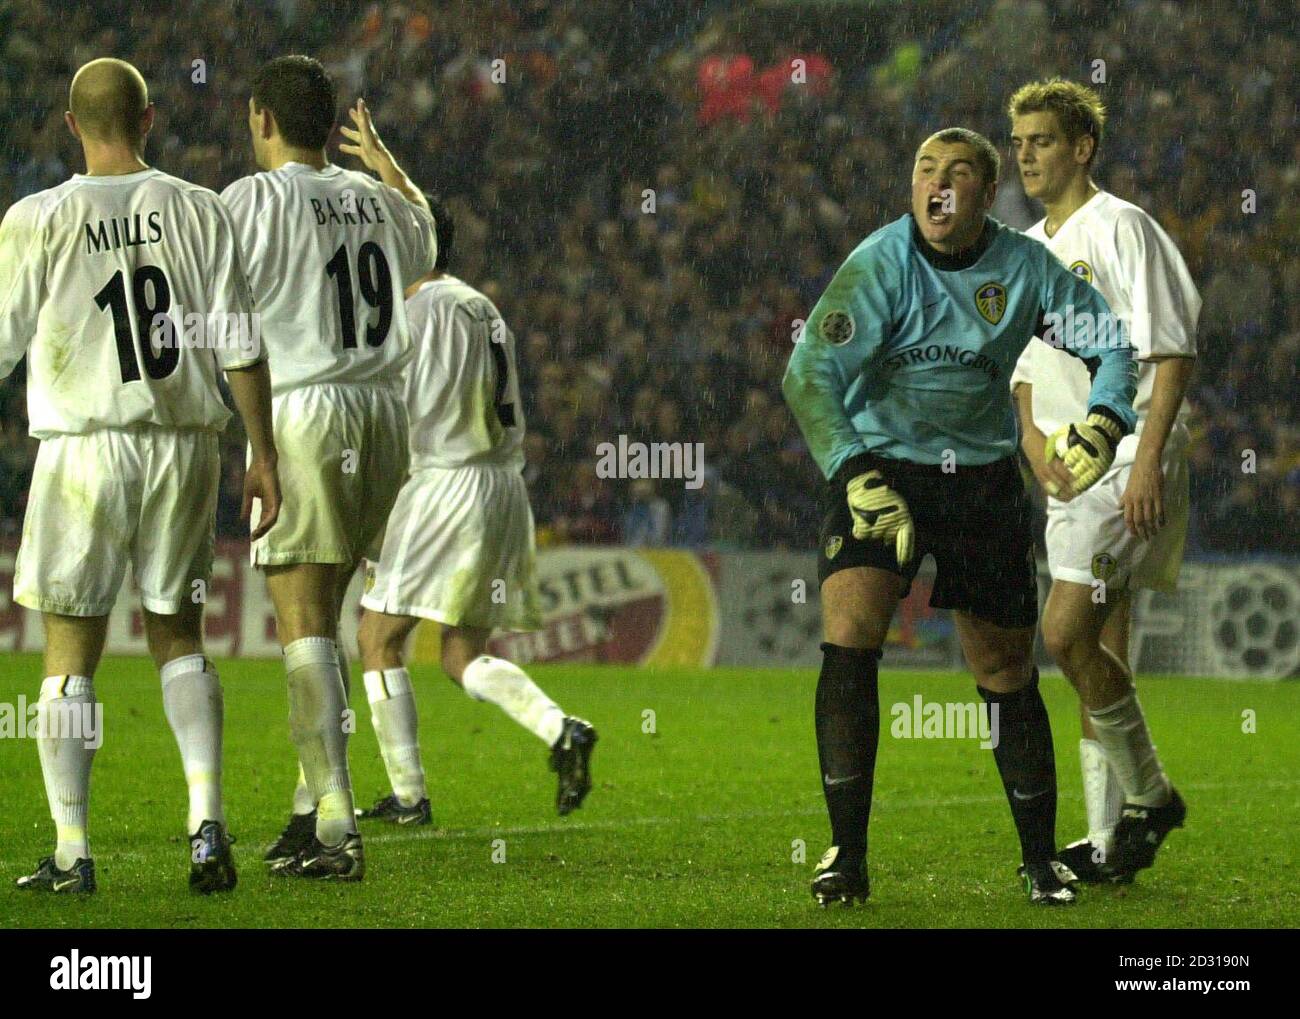 Paul Robinson, gardien de but de Leeds United, crie aux officiels après l'égaliseur tardif en visitant l'équipe espagnole de Barcelone lors de leur match de la Ligue des champions de l'UEFA à Elland Road. Banque D'Images